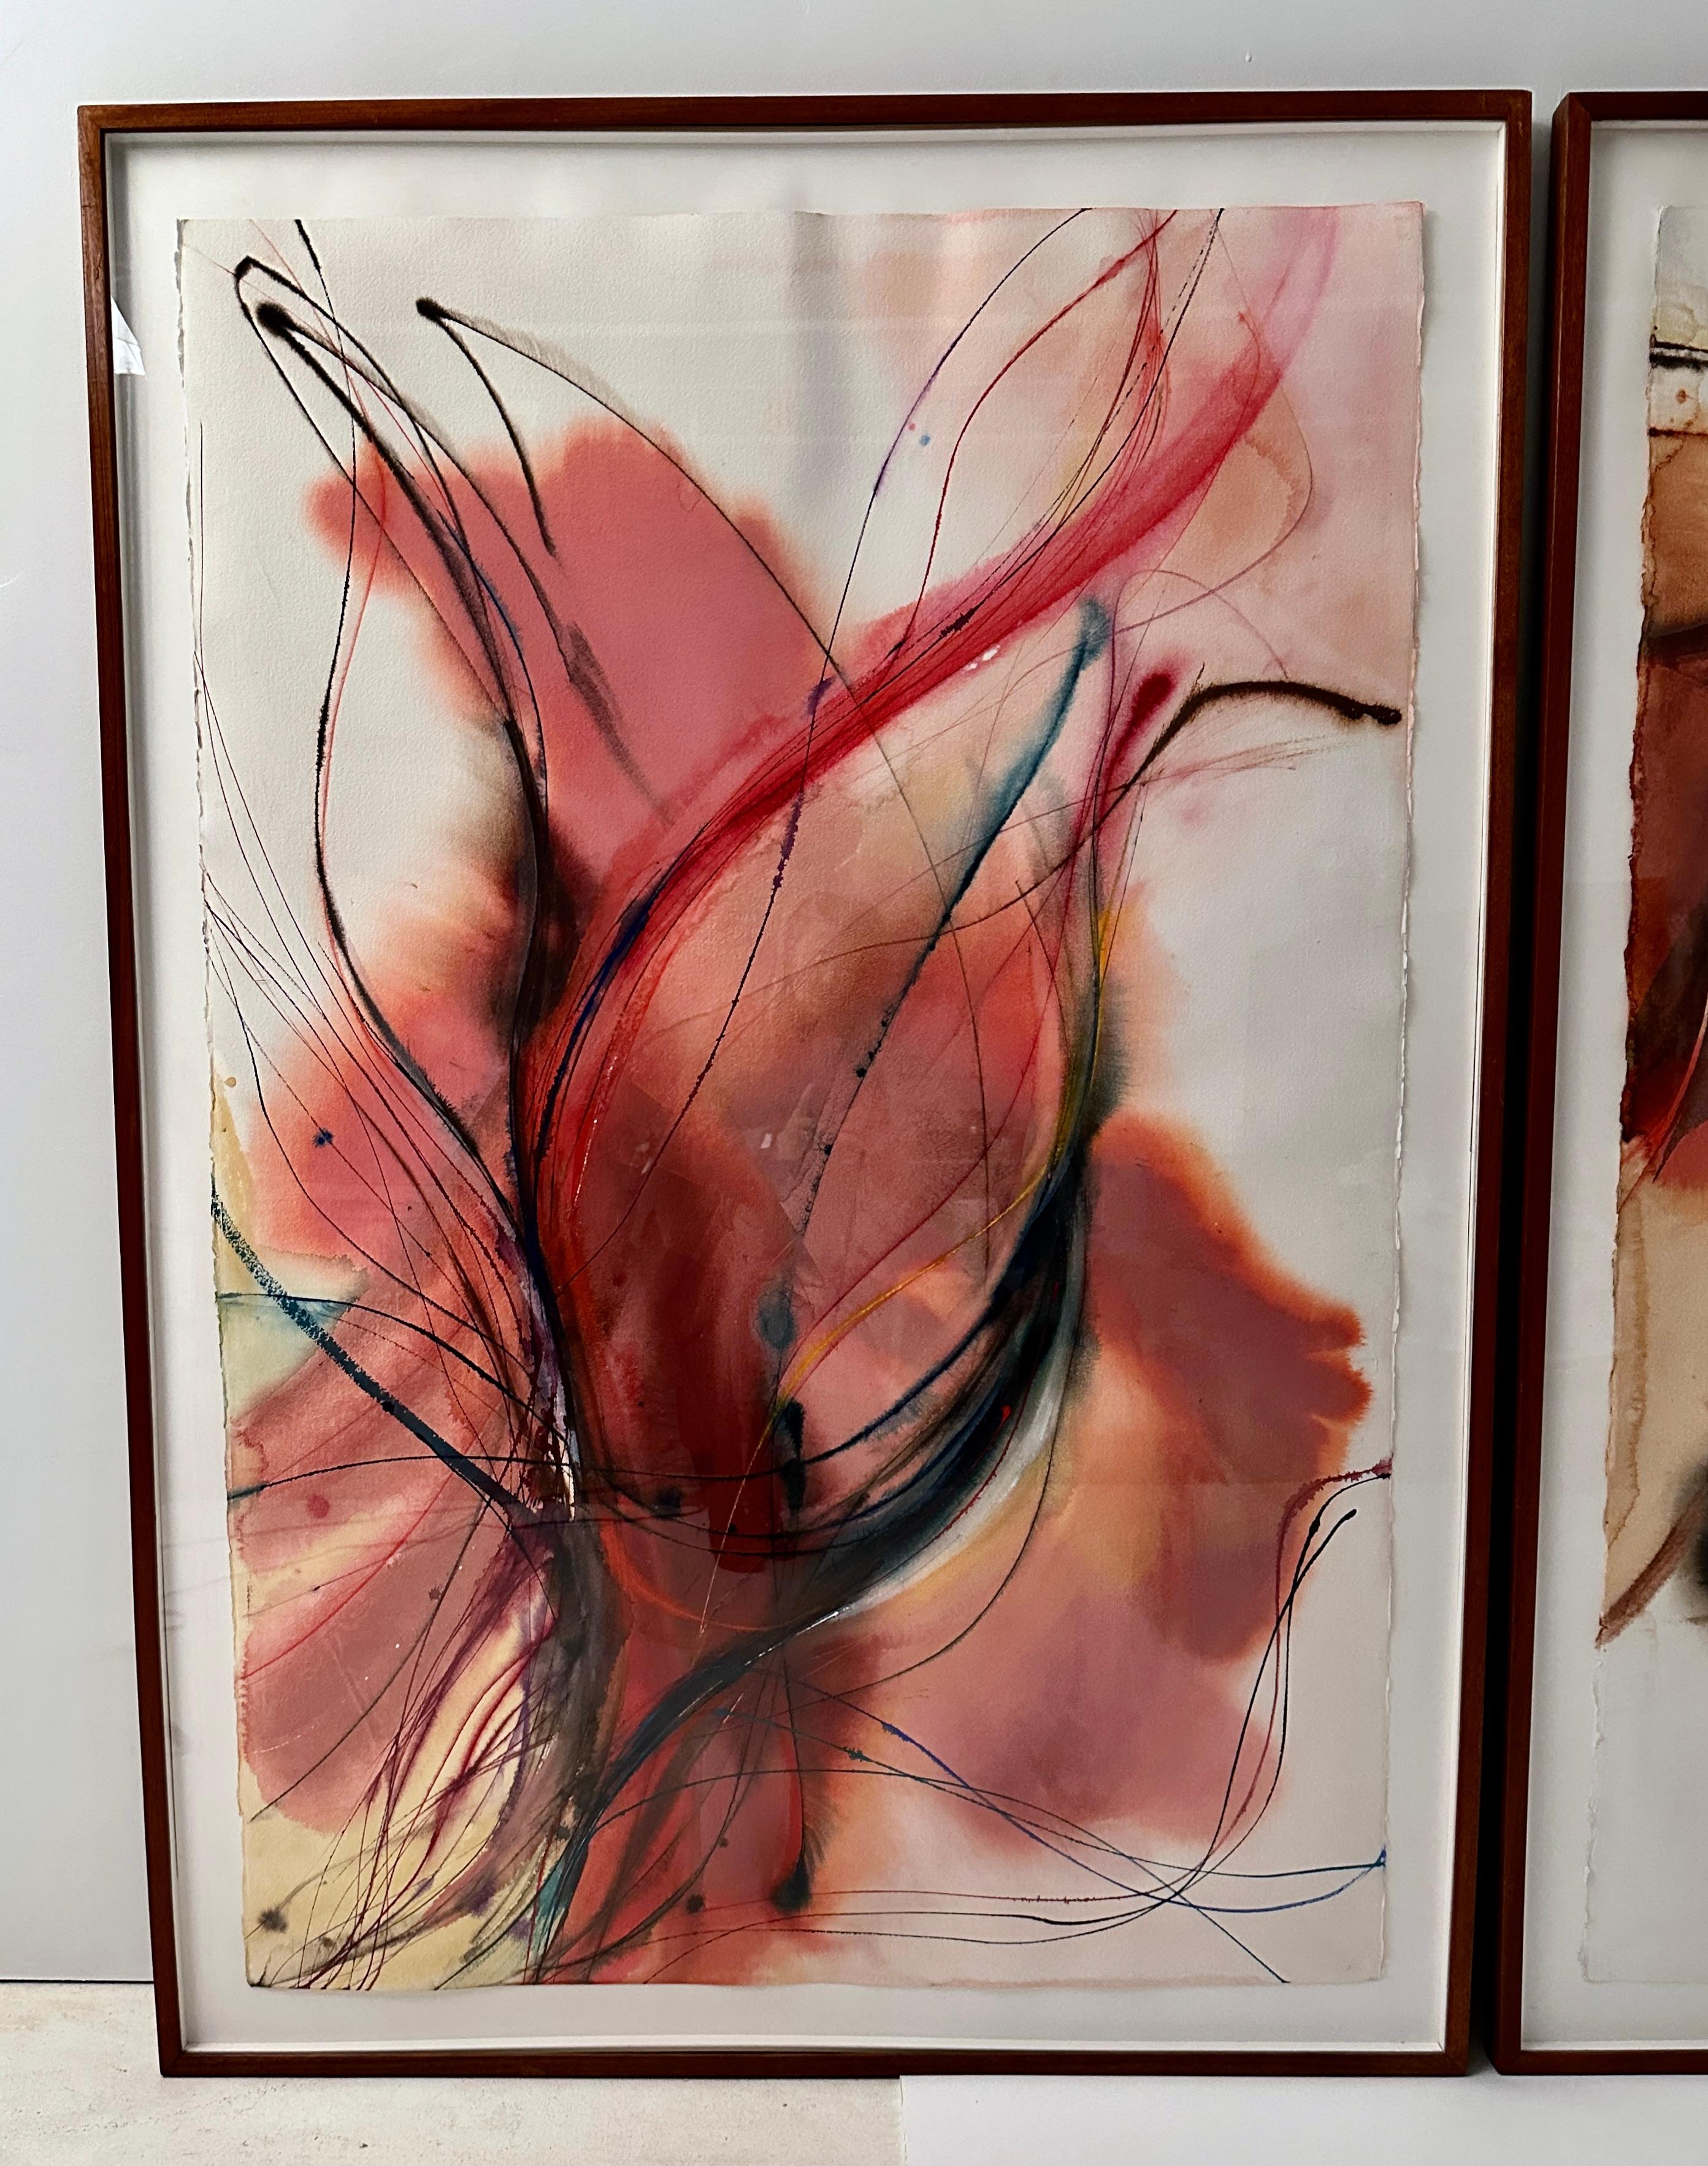 Diese großformatigen Werke von Bernice Alpert Winick sind mit Acrylfarben auf Papier gemalt und werden in ihren Originalrahmen aus Mahagoniholz gezeigt. Großes Format: gerahmte Abmessungen 66